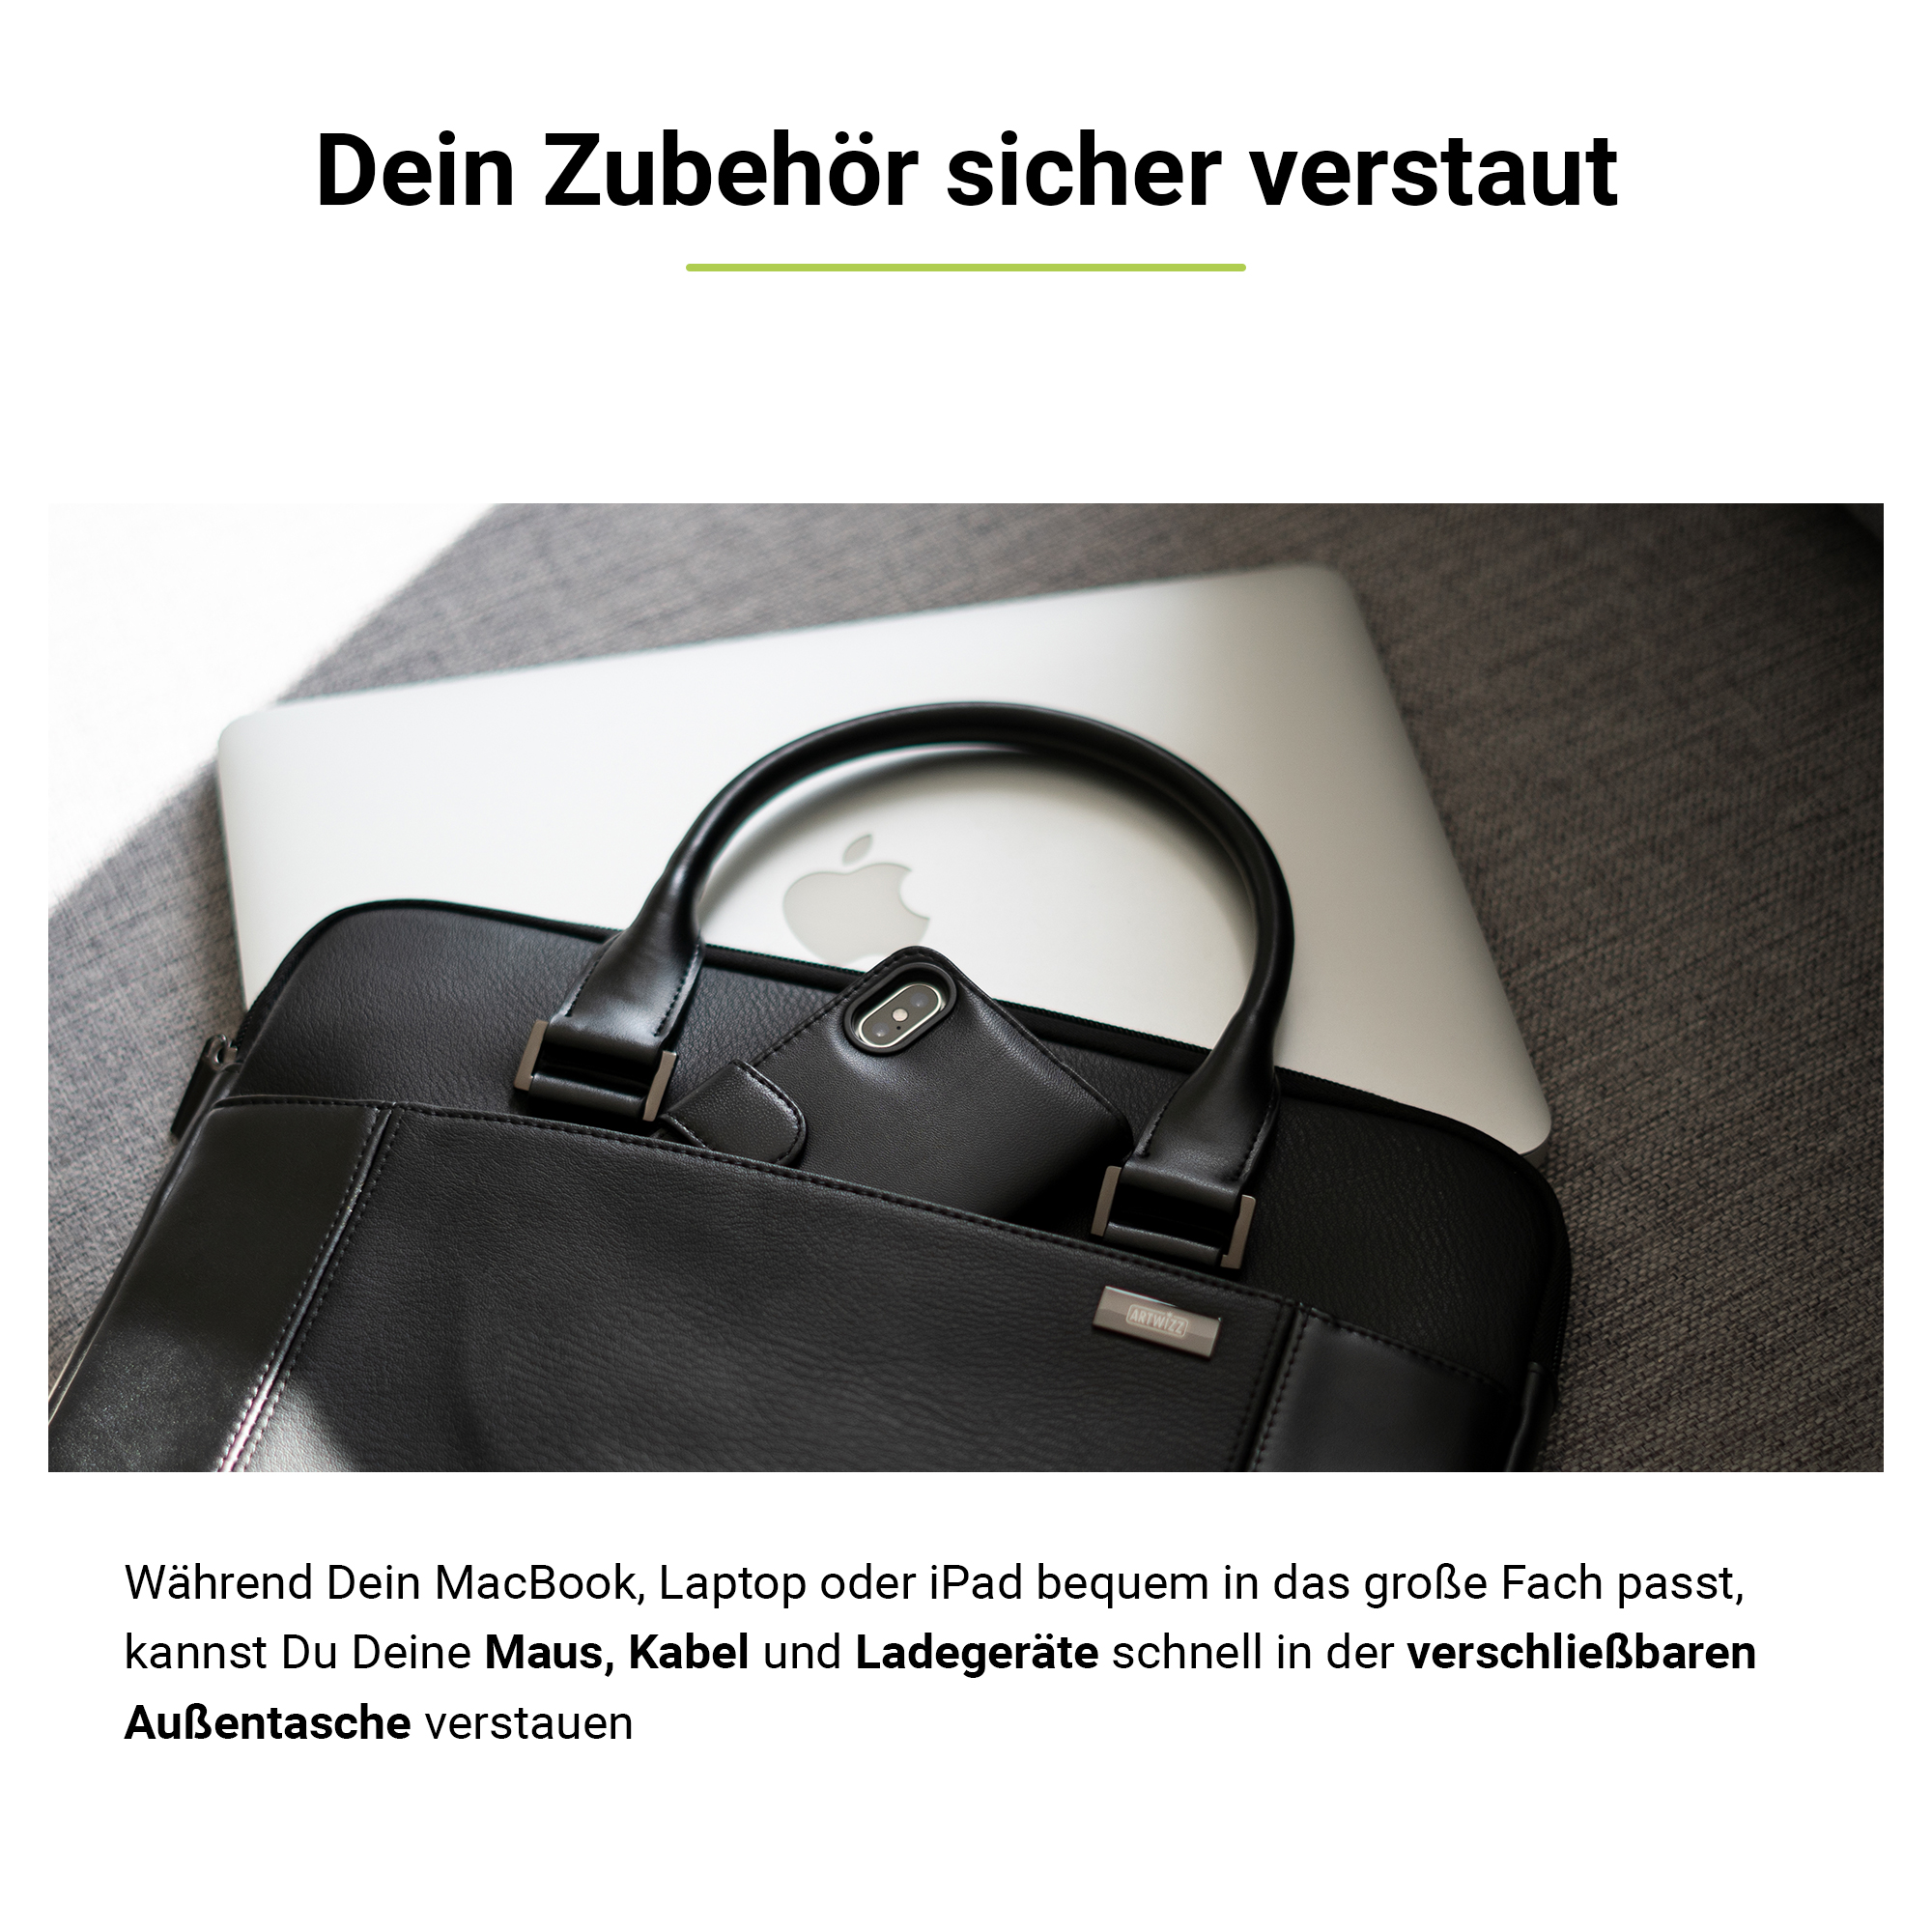 ARTWIZZ Leather / Bag 16 Schwarz Leder, Aktentasche für Tasche Notebook 15 Zoll für Apple